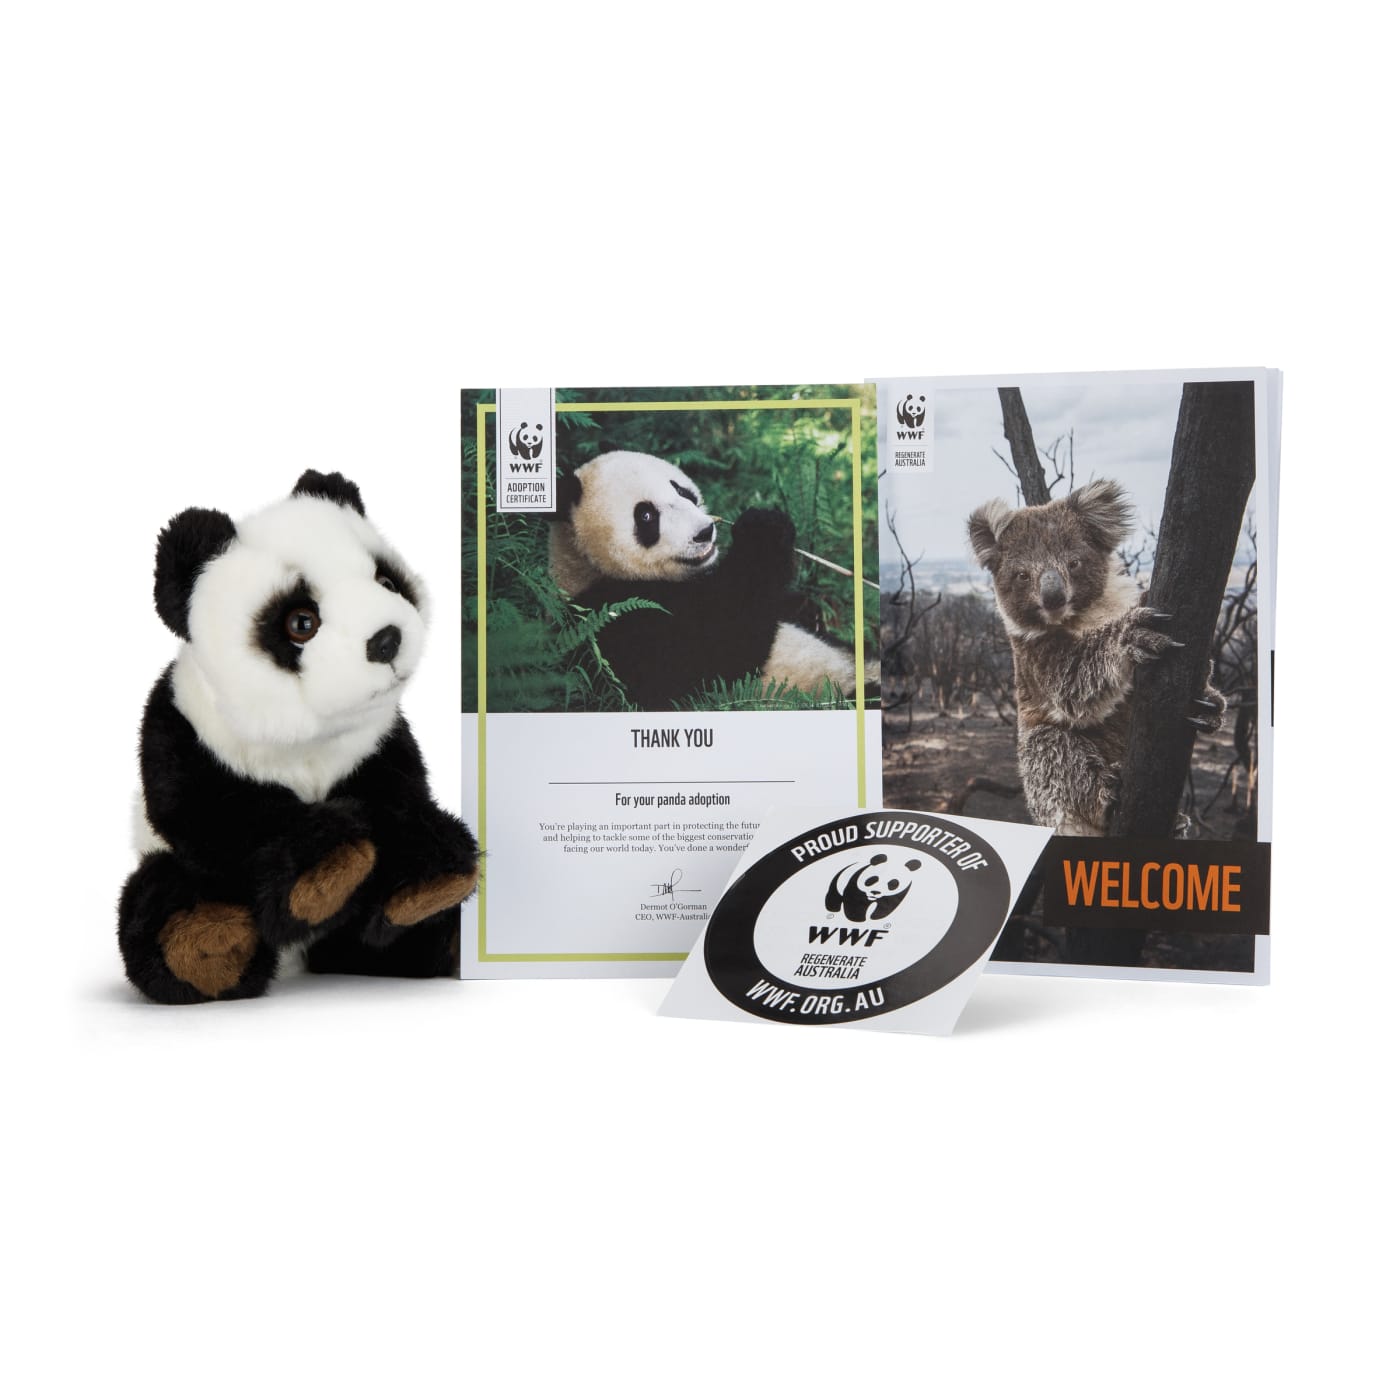 Adopt a panda pack